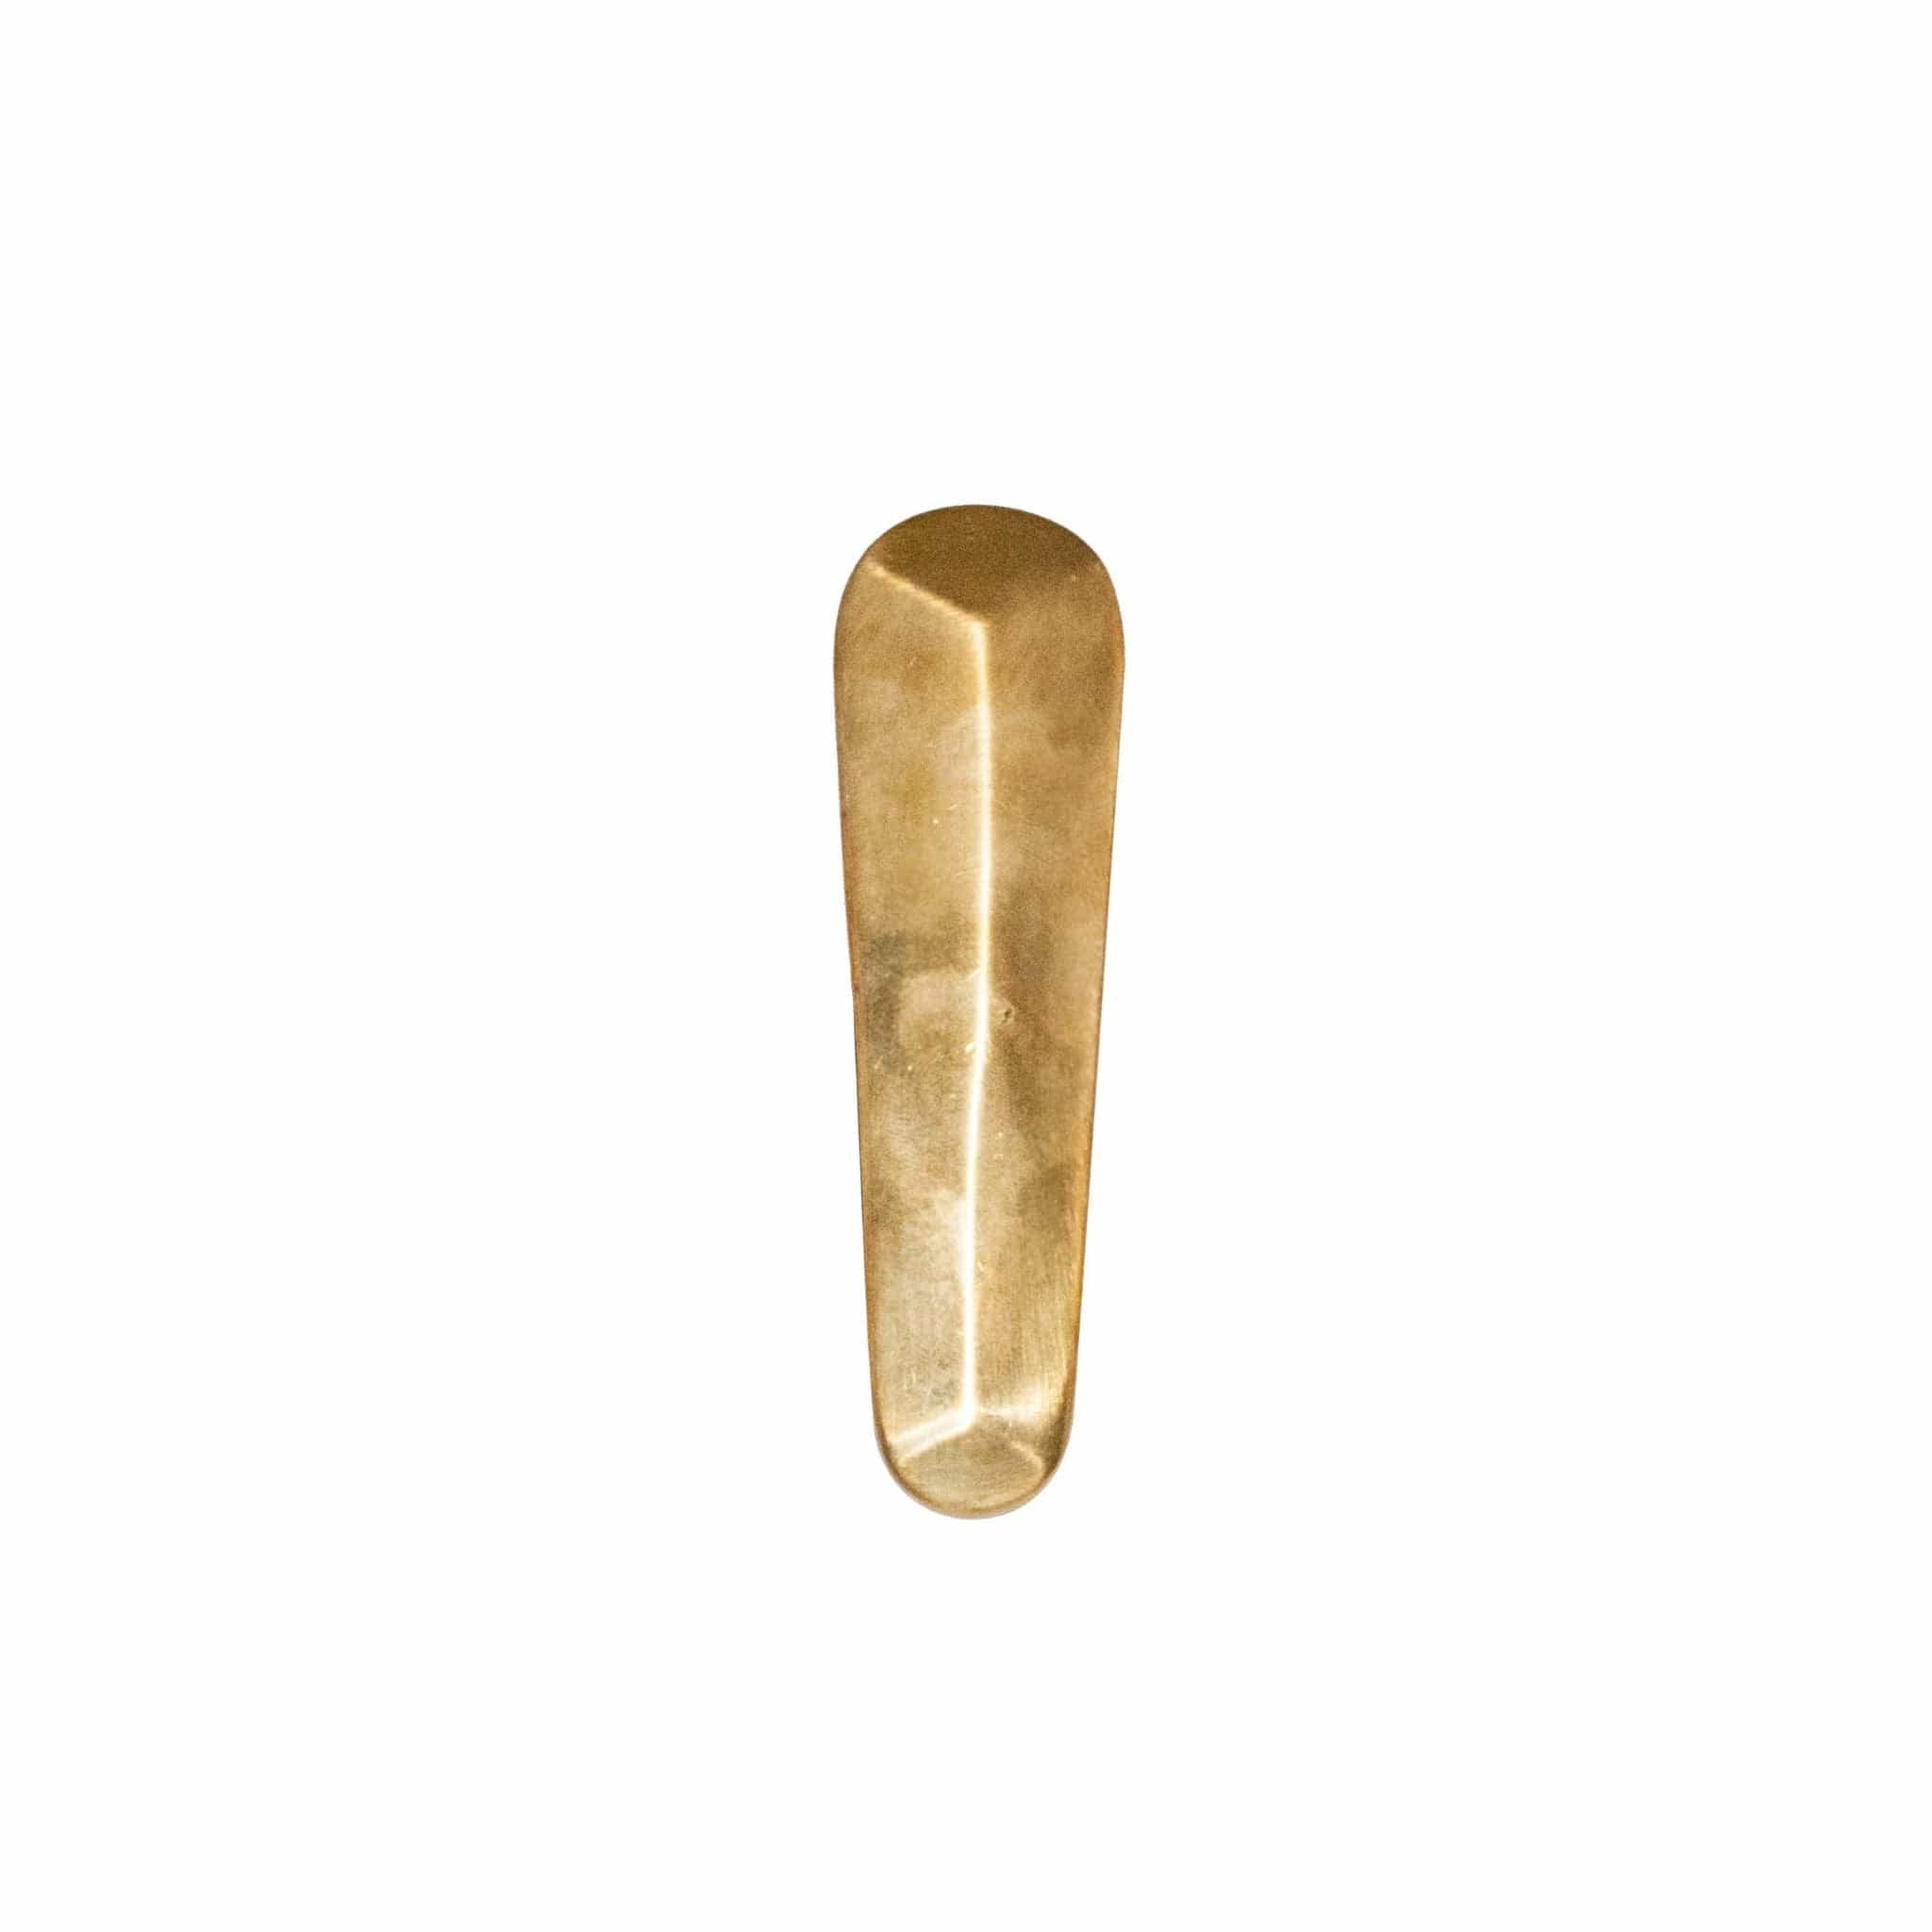 Novecento brass cuneiform mobile knob - ilbronzetto